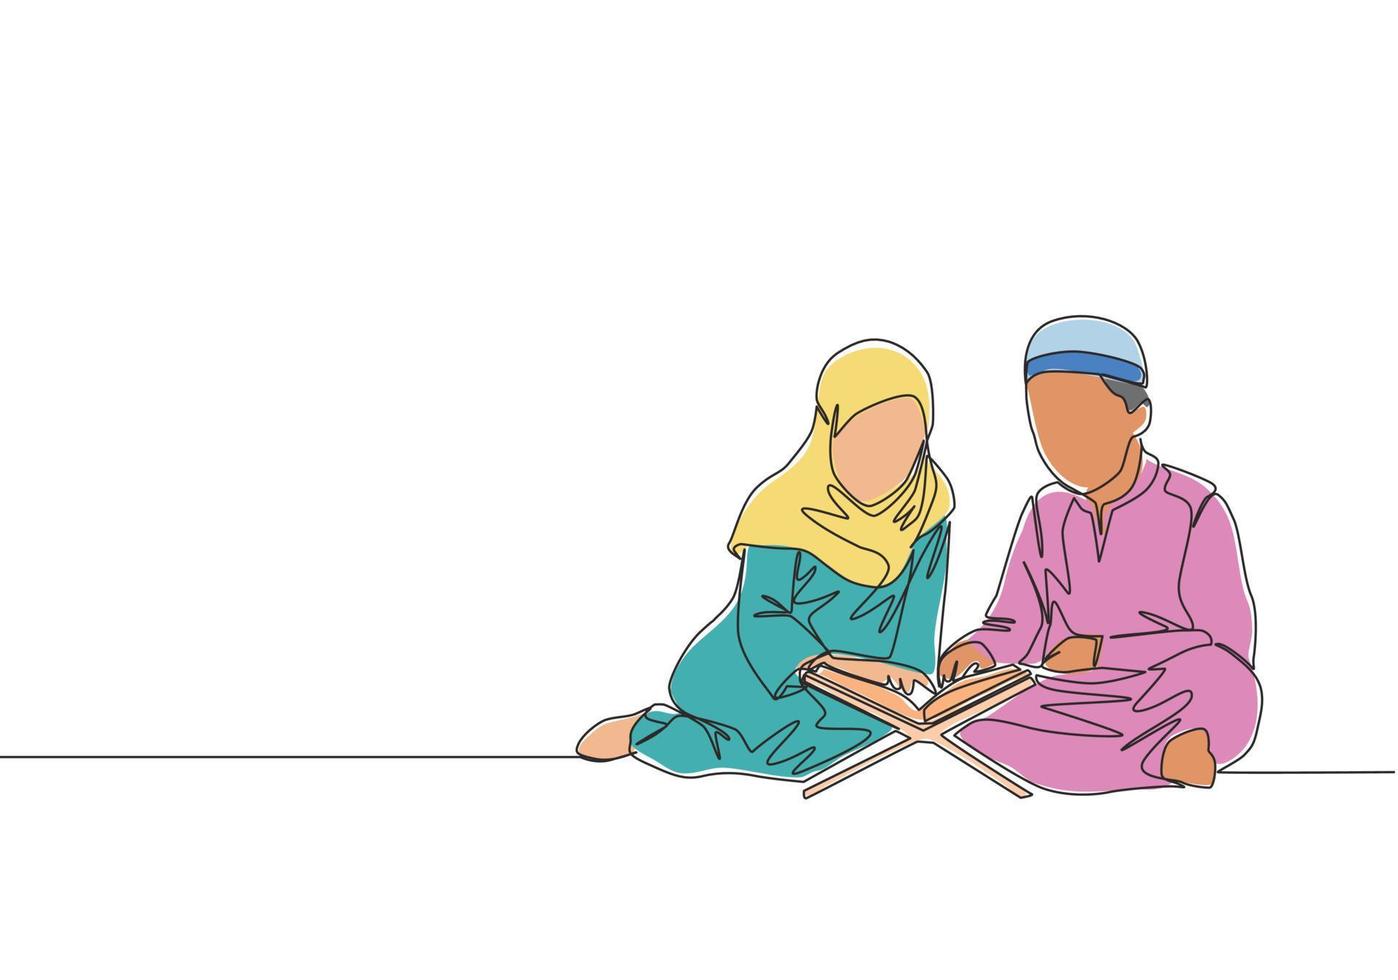 een doorlopend lijn tekening van moslim en muslimah kinderen lezing en reciteren koran. Islamitisch heilig dag Ramadan kareem en eid mubarak groet kaart concept single lijn trek ontwerp vector illustratie